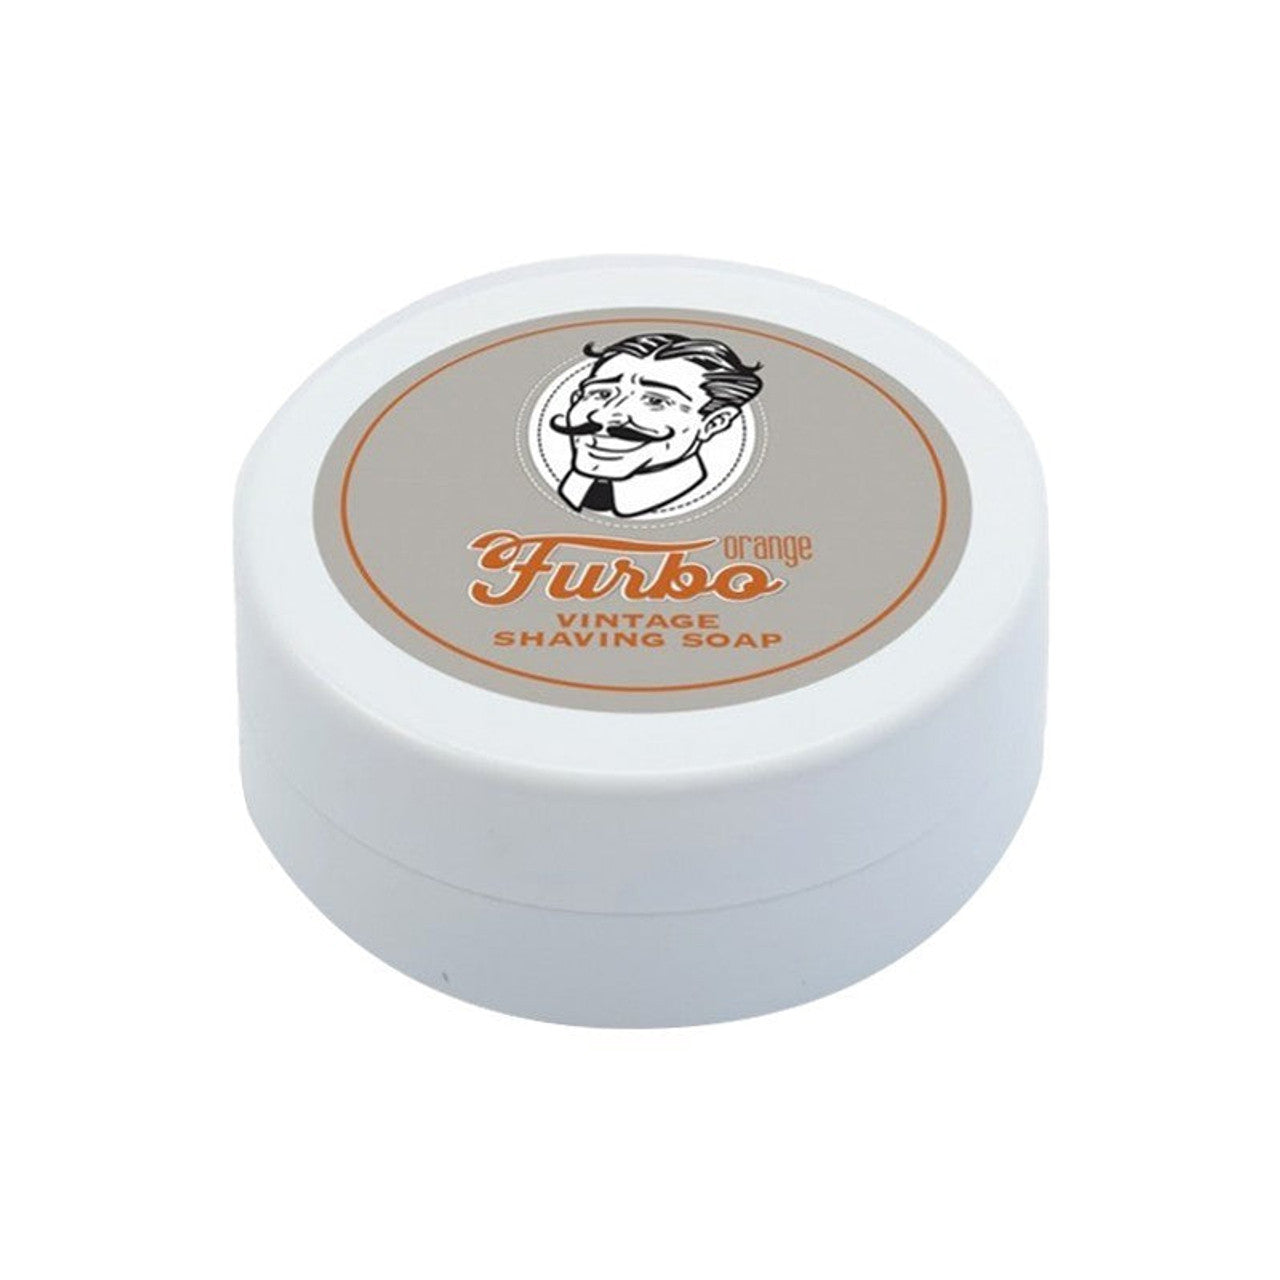 Furbo Vintage Orange Shaving Soap (100ml)